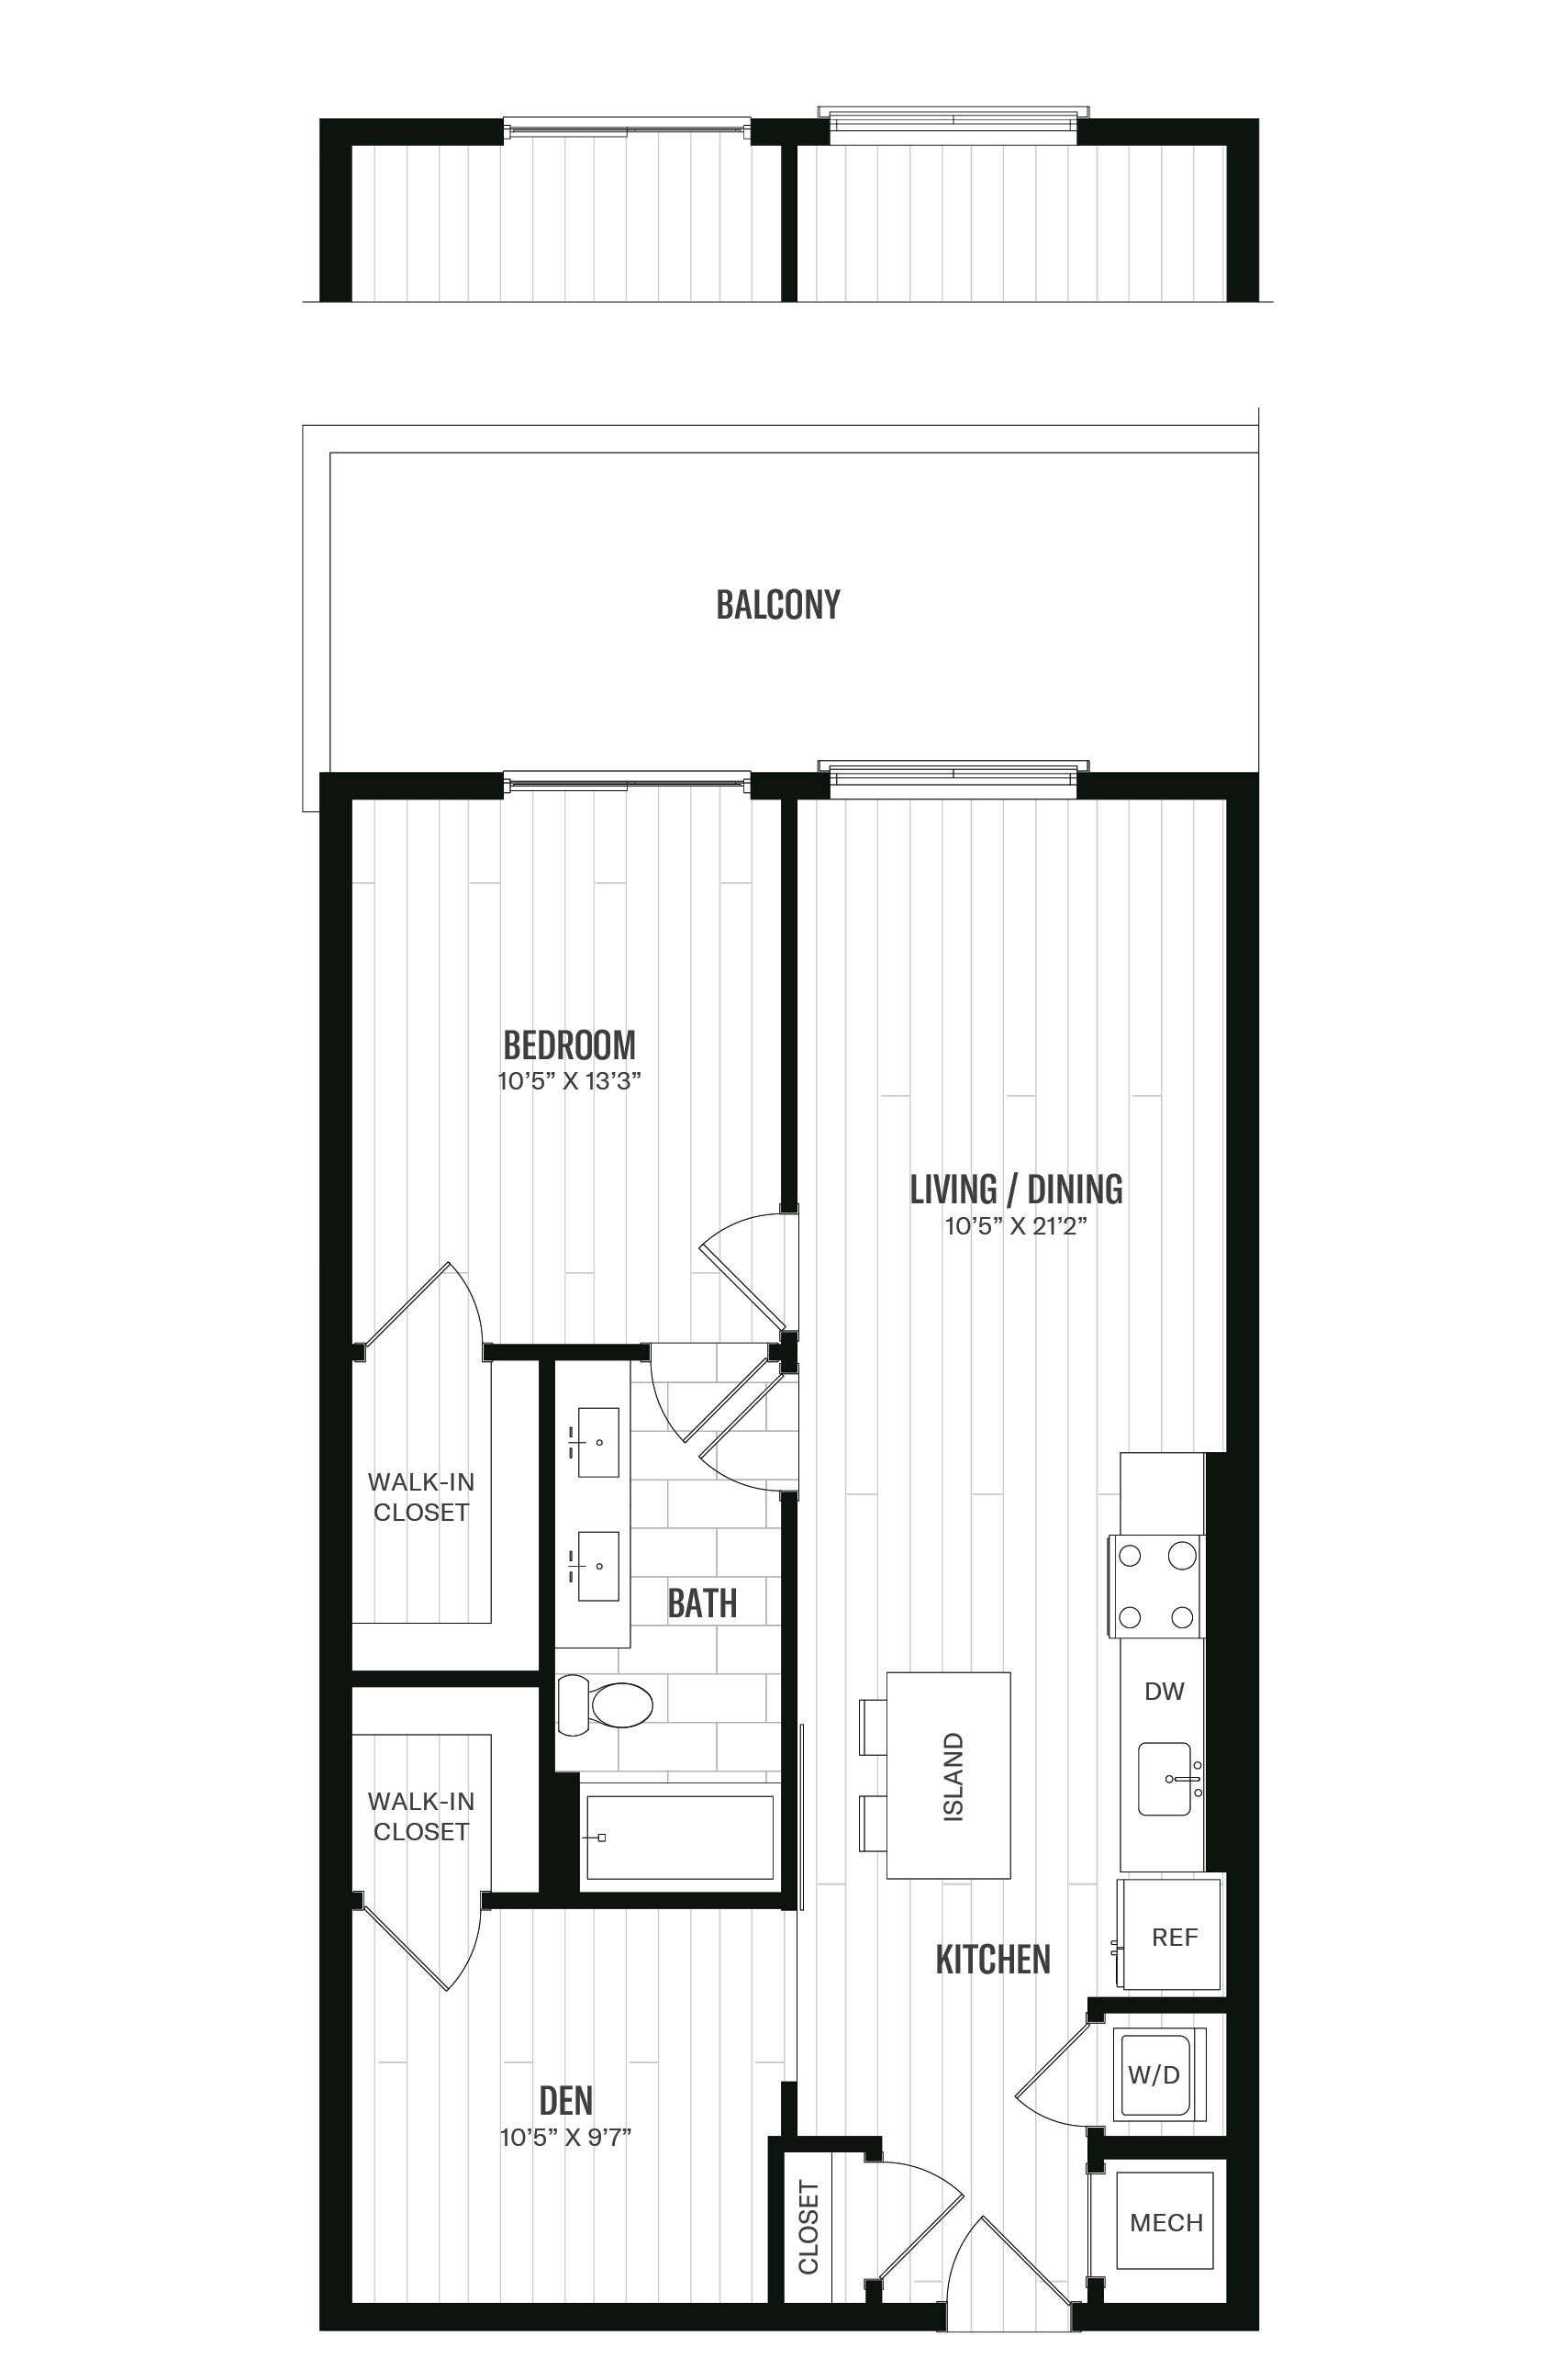 Floorplan image of unit 343